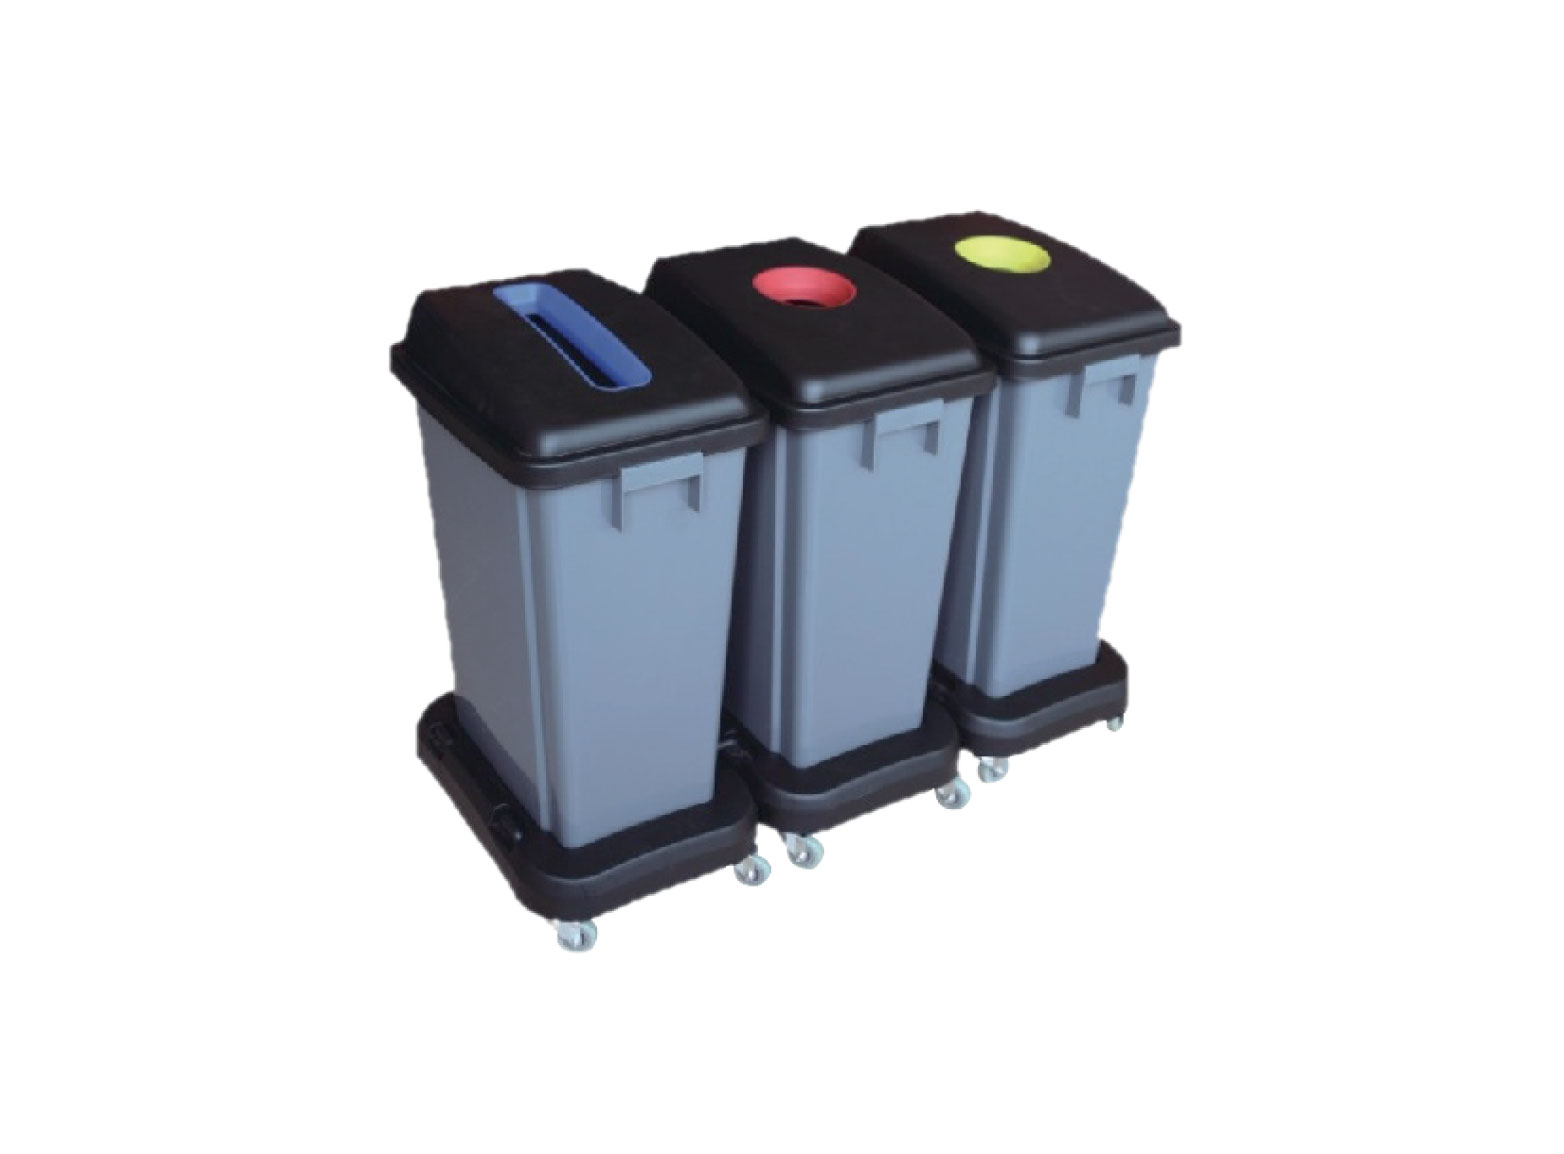 Waste classification plastic bin with wheel